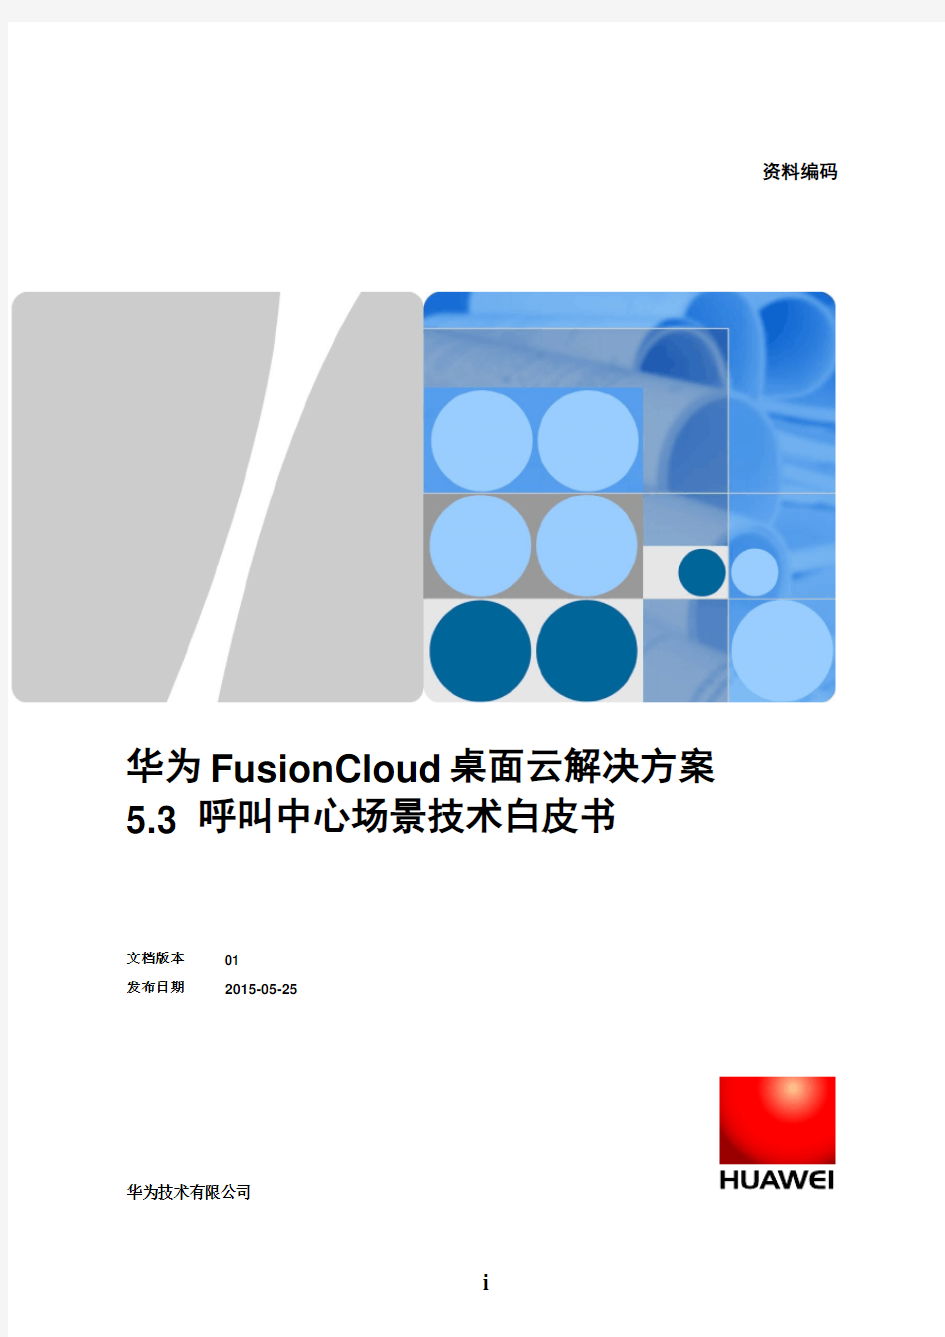 华为FusionCloud桌面云-呼叫中心场景技术白皮书